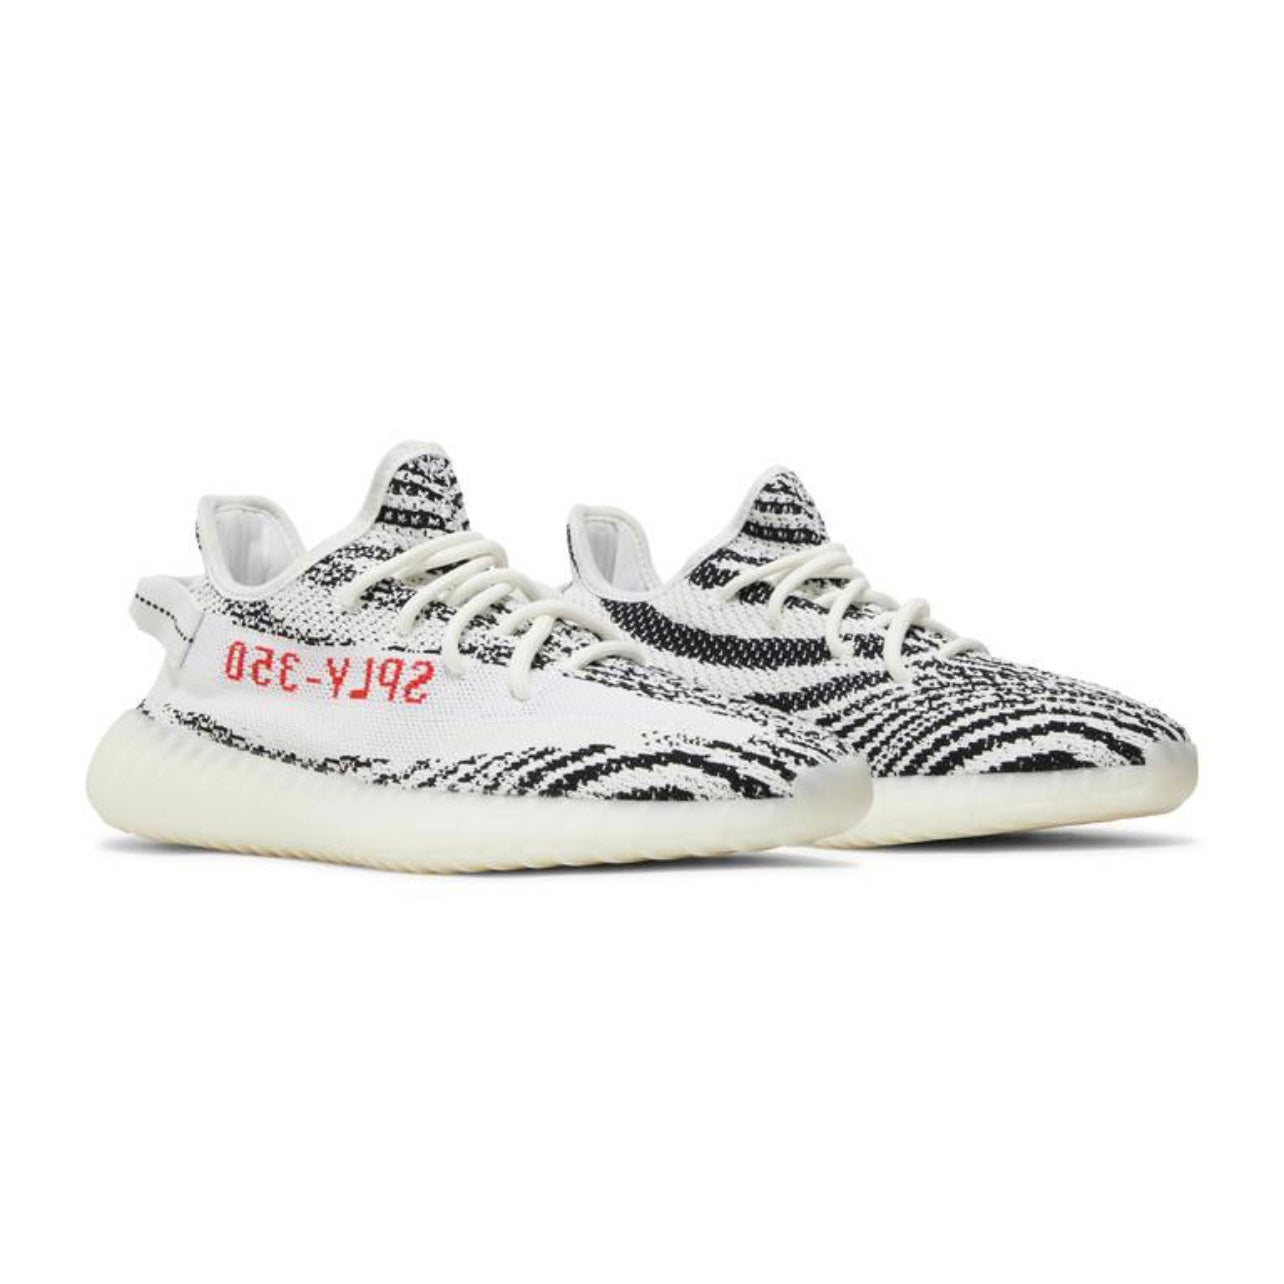 Adidas Yeezy Boost 350 V2 "Zebra"